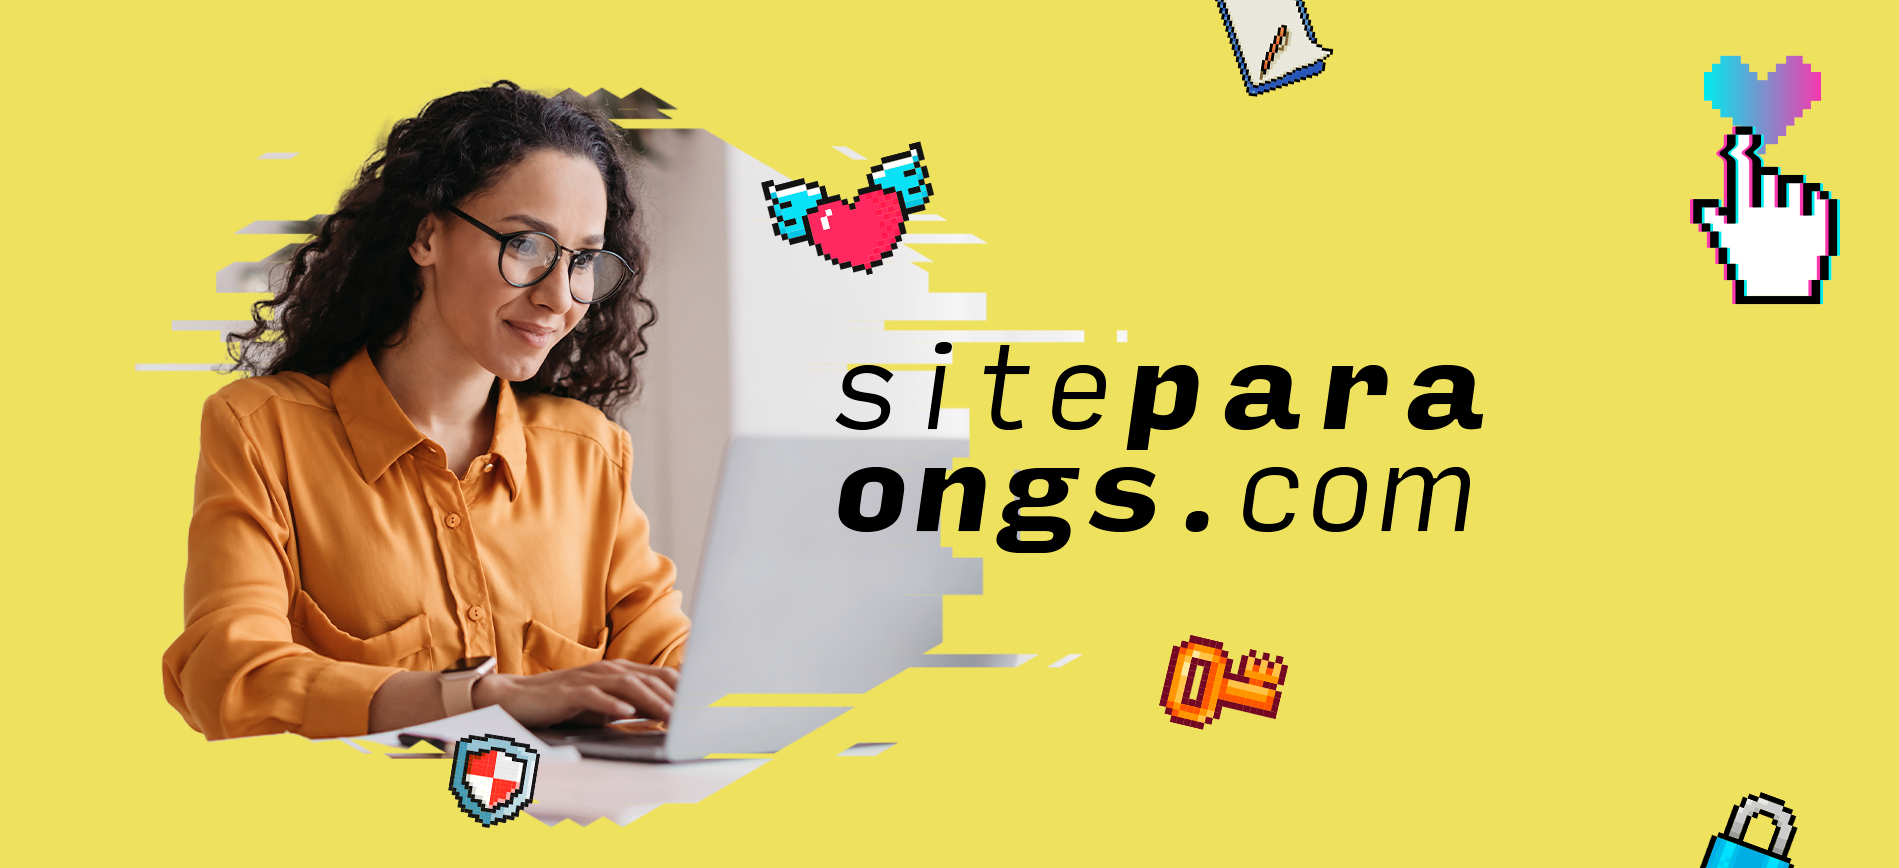 Com a plataforma SiteParaONGs é possível aumentar sua visibilidade, capte mais recursos e transforme